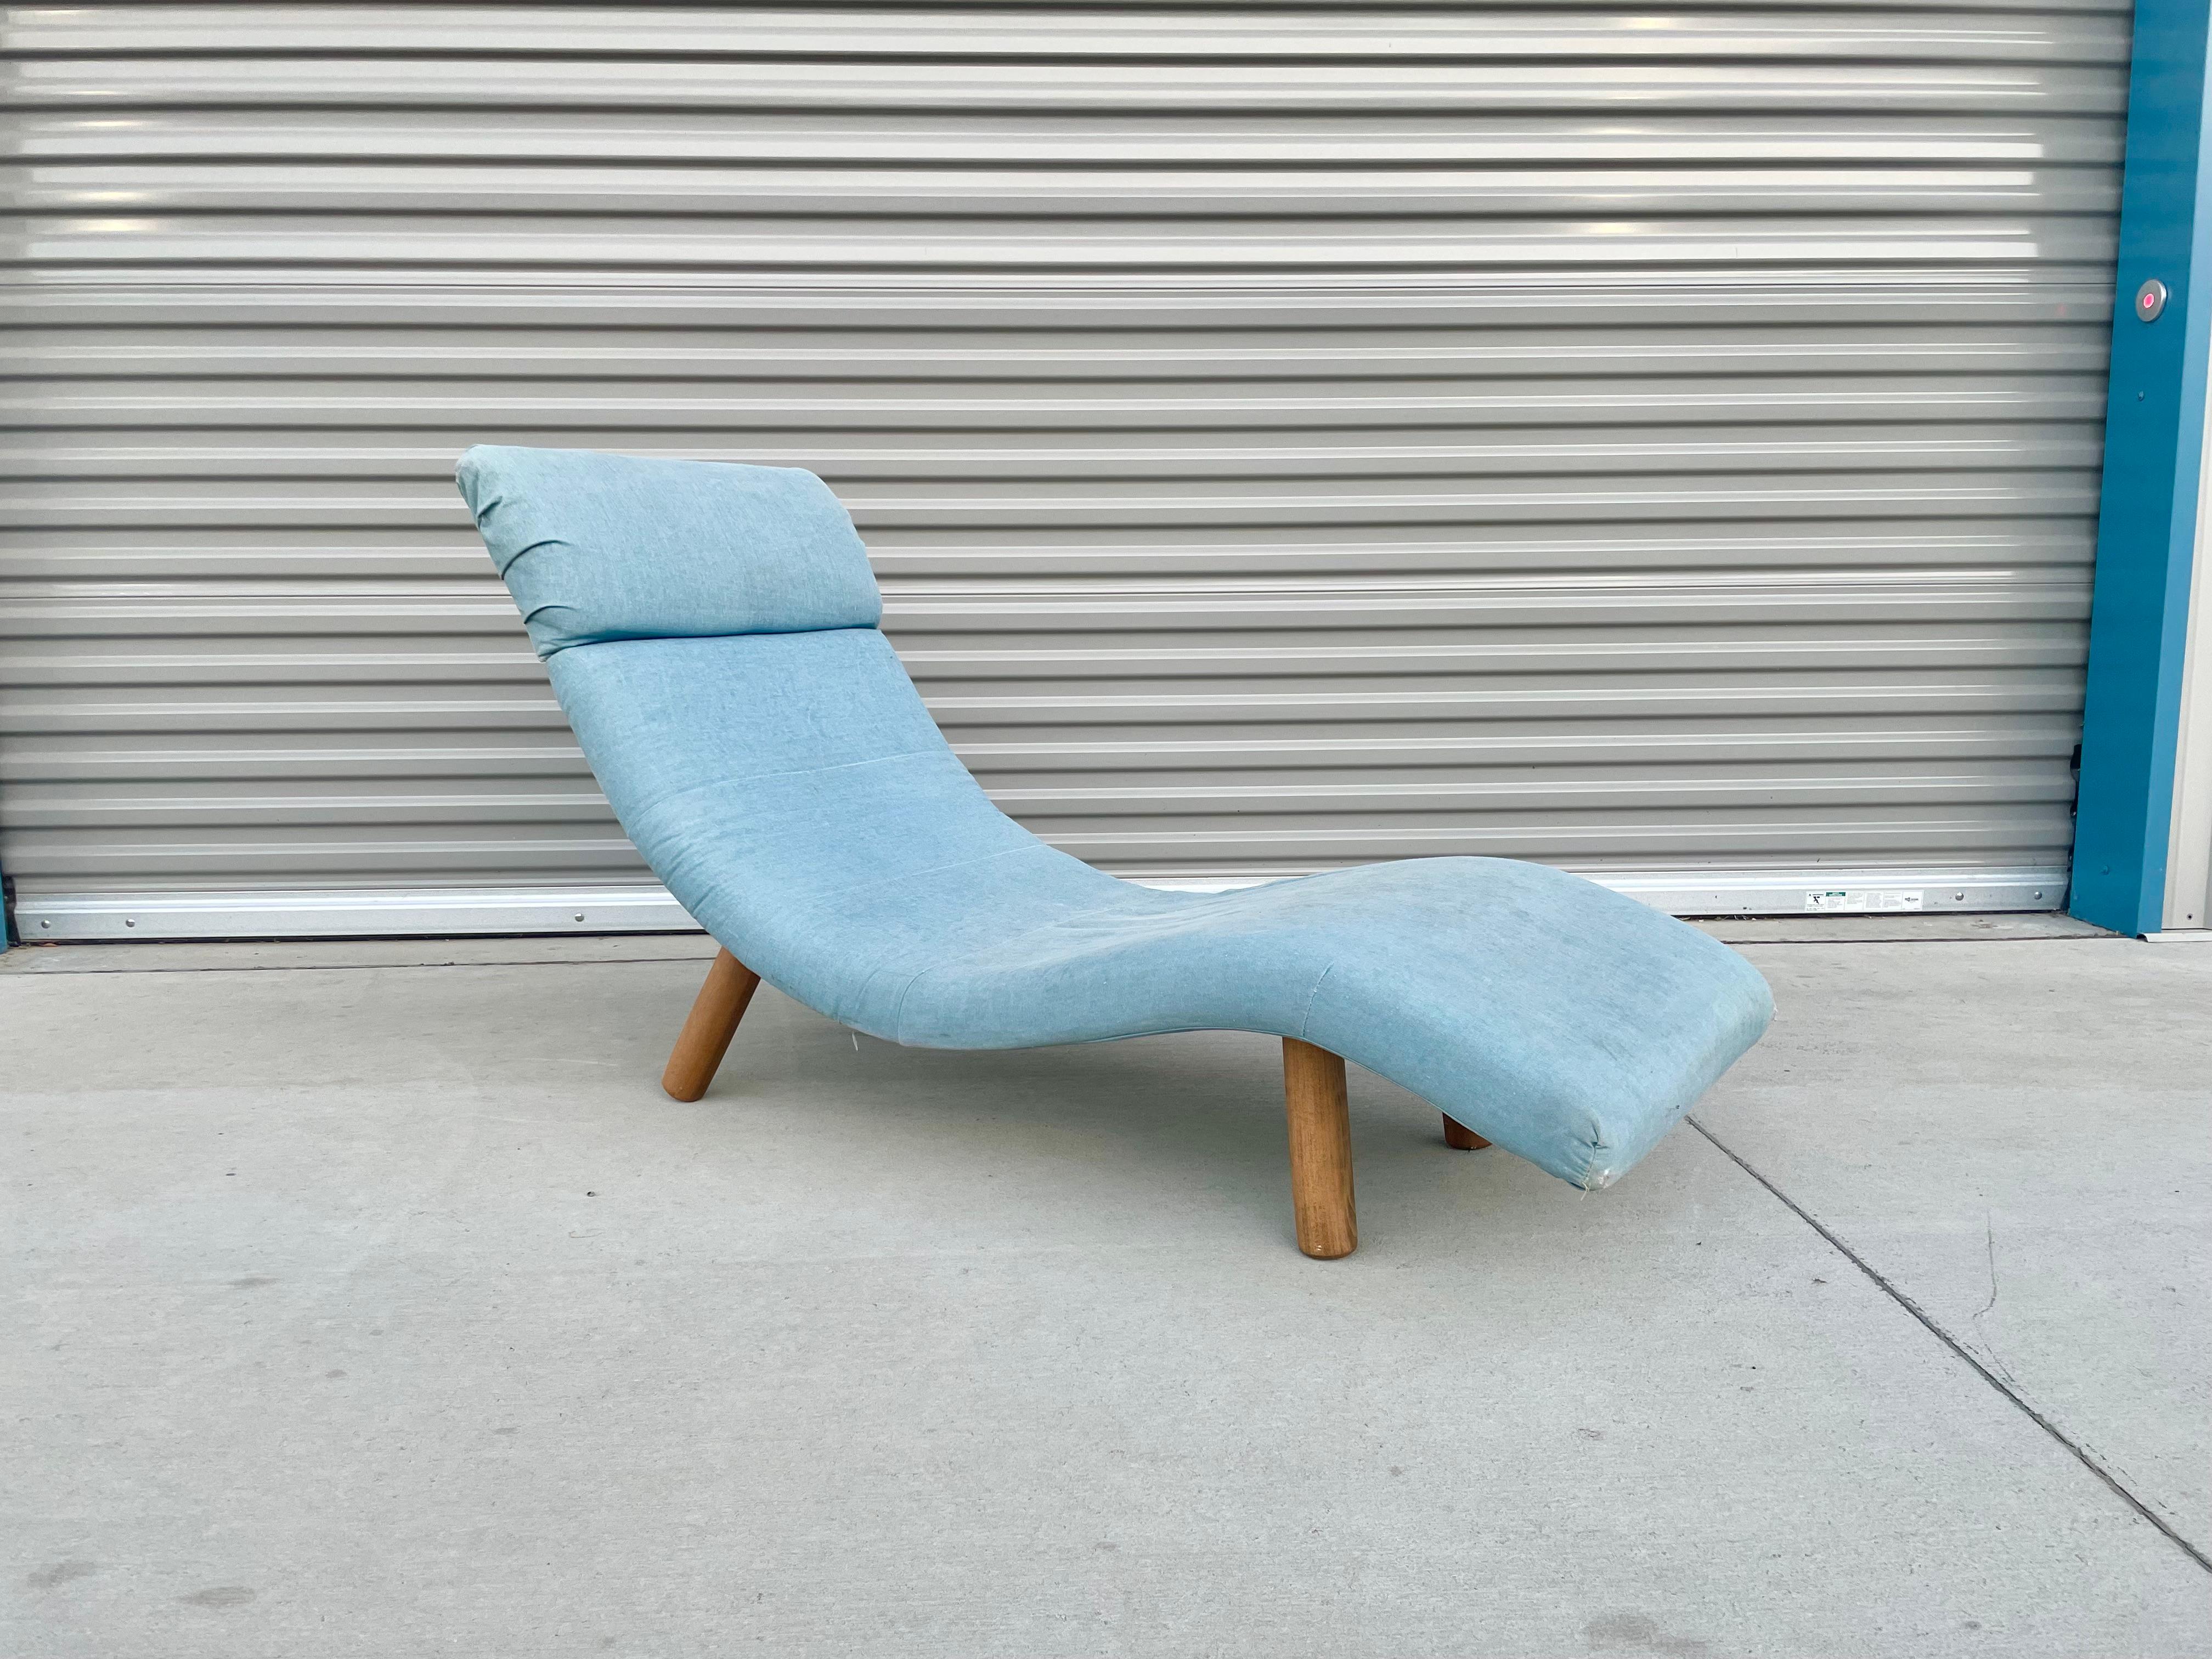 Wave Chaise Lounge aus der Mitte des Jahrhunderts, entworfen und hergestellt von Enrico Bartolini in den Vereinigten Staaten, um 1970. Diese schöne Vintage-Chaise-Lounge hat ein Ozean-Wellen-Design, das Komfort und ein einzigartiges Aussehen zu ihm